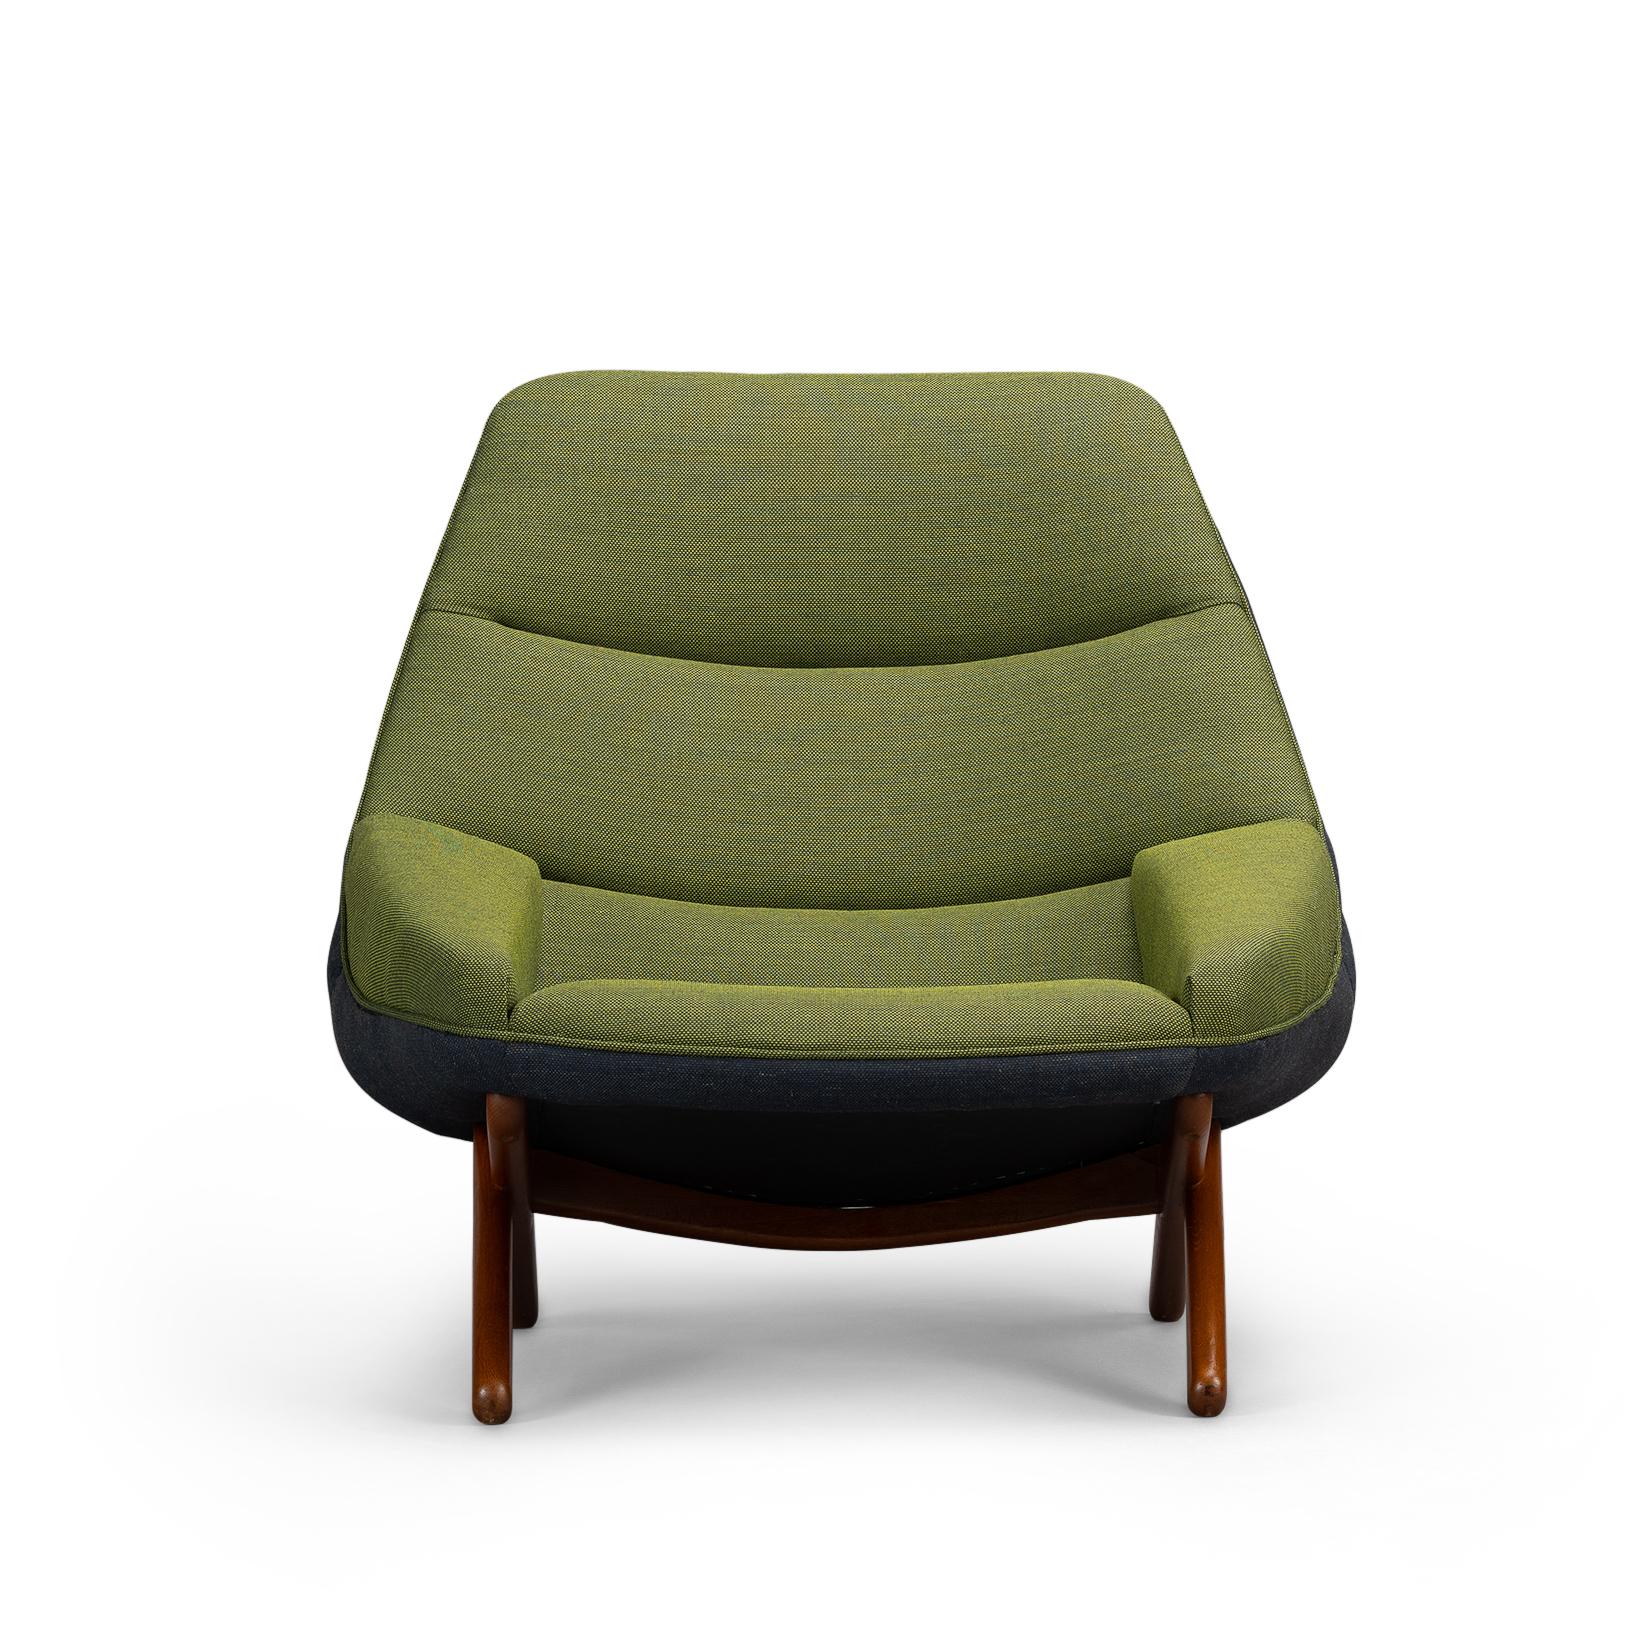 Ce confortable fauteuil ML-91 est clairement reconnaissable comme un modèle Illum Wikkelso. Cette chaise a été fabriquée au milieu des années 1960 par l'usine Michael Laursen. Un design assez peu conventionnel avec des pieds croisés en teck massif